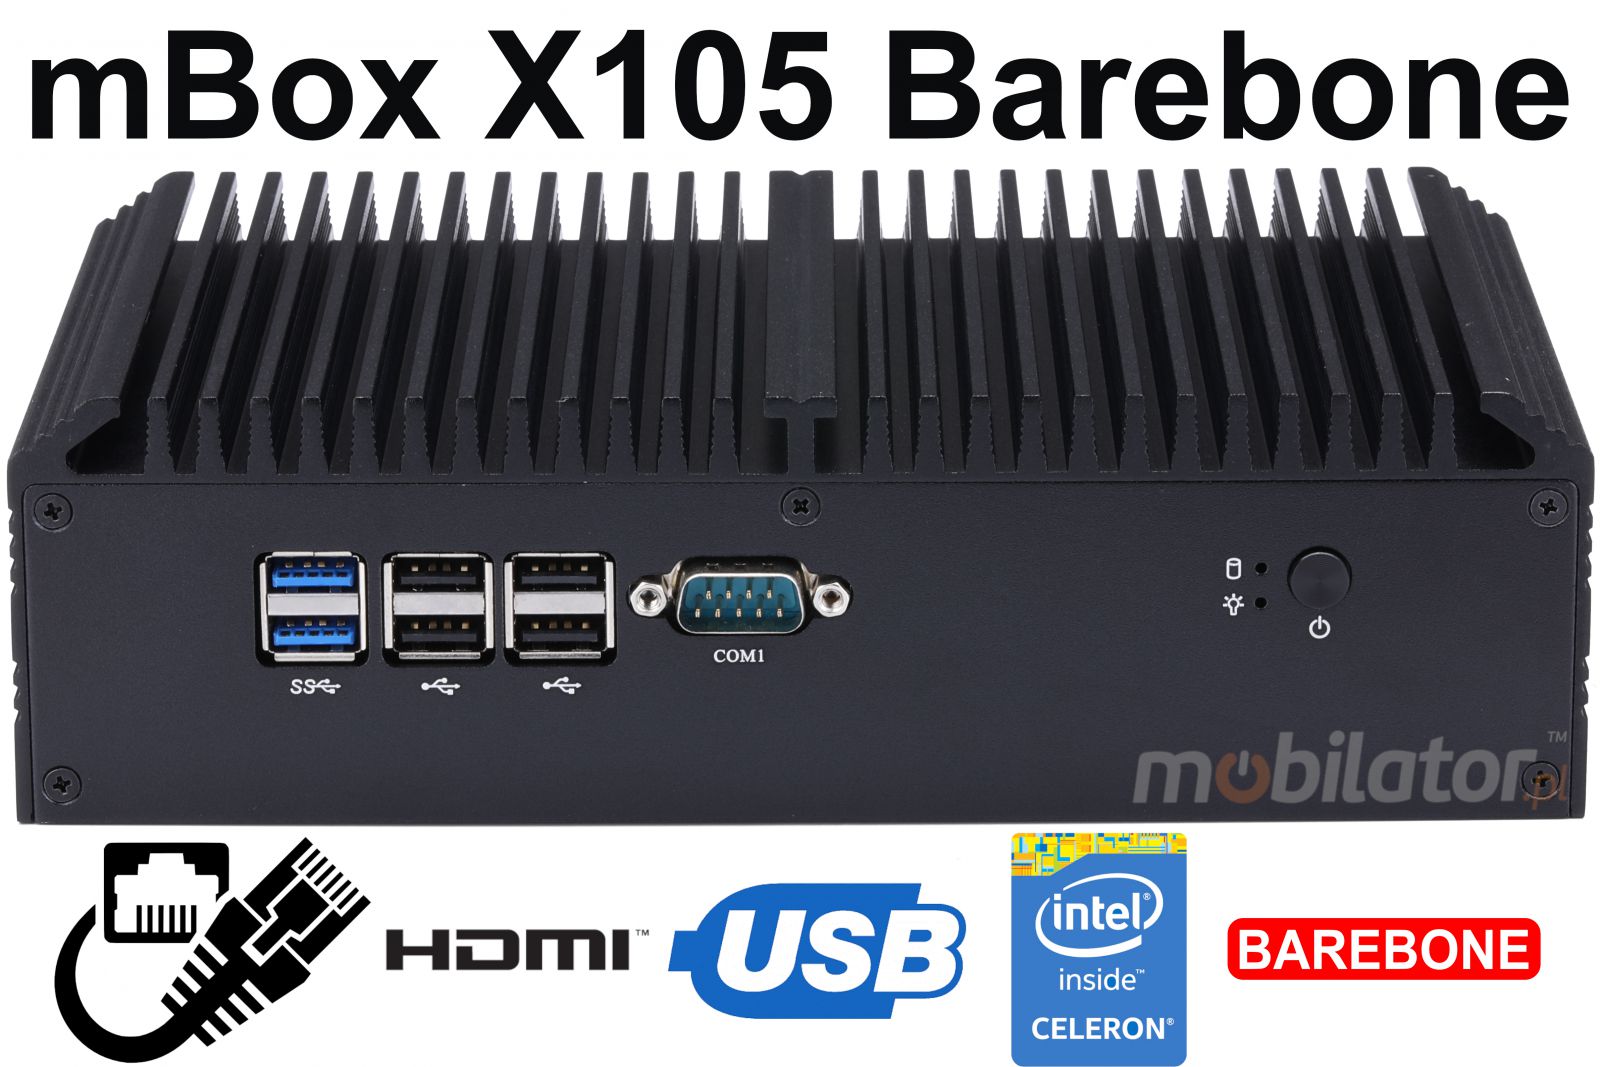 mBox X105 Barebone - Przemysowy MiniPC z procesorem Intel Celeron 3855U - Obrazek tytuowy